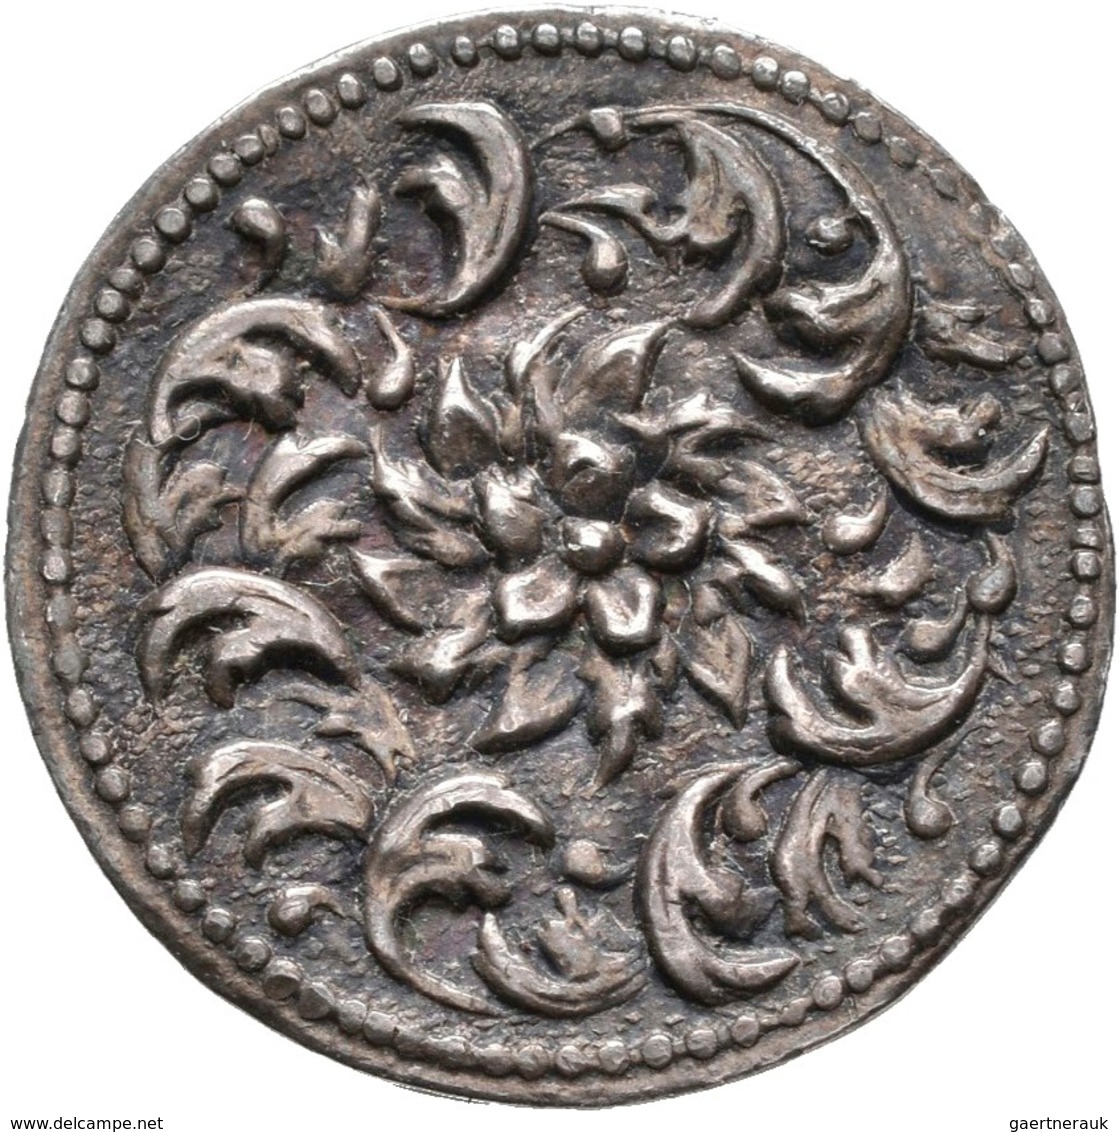 Varia, Sonstiges: Silberne Puderdose in Form einer Muschel, ca. 69 x 51 mm; dazu dekoratives altes S